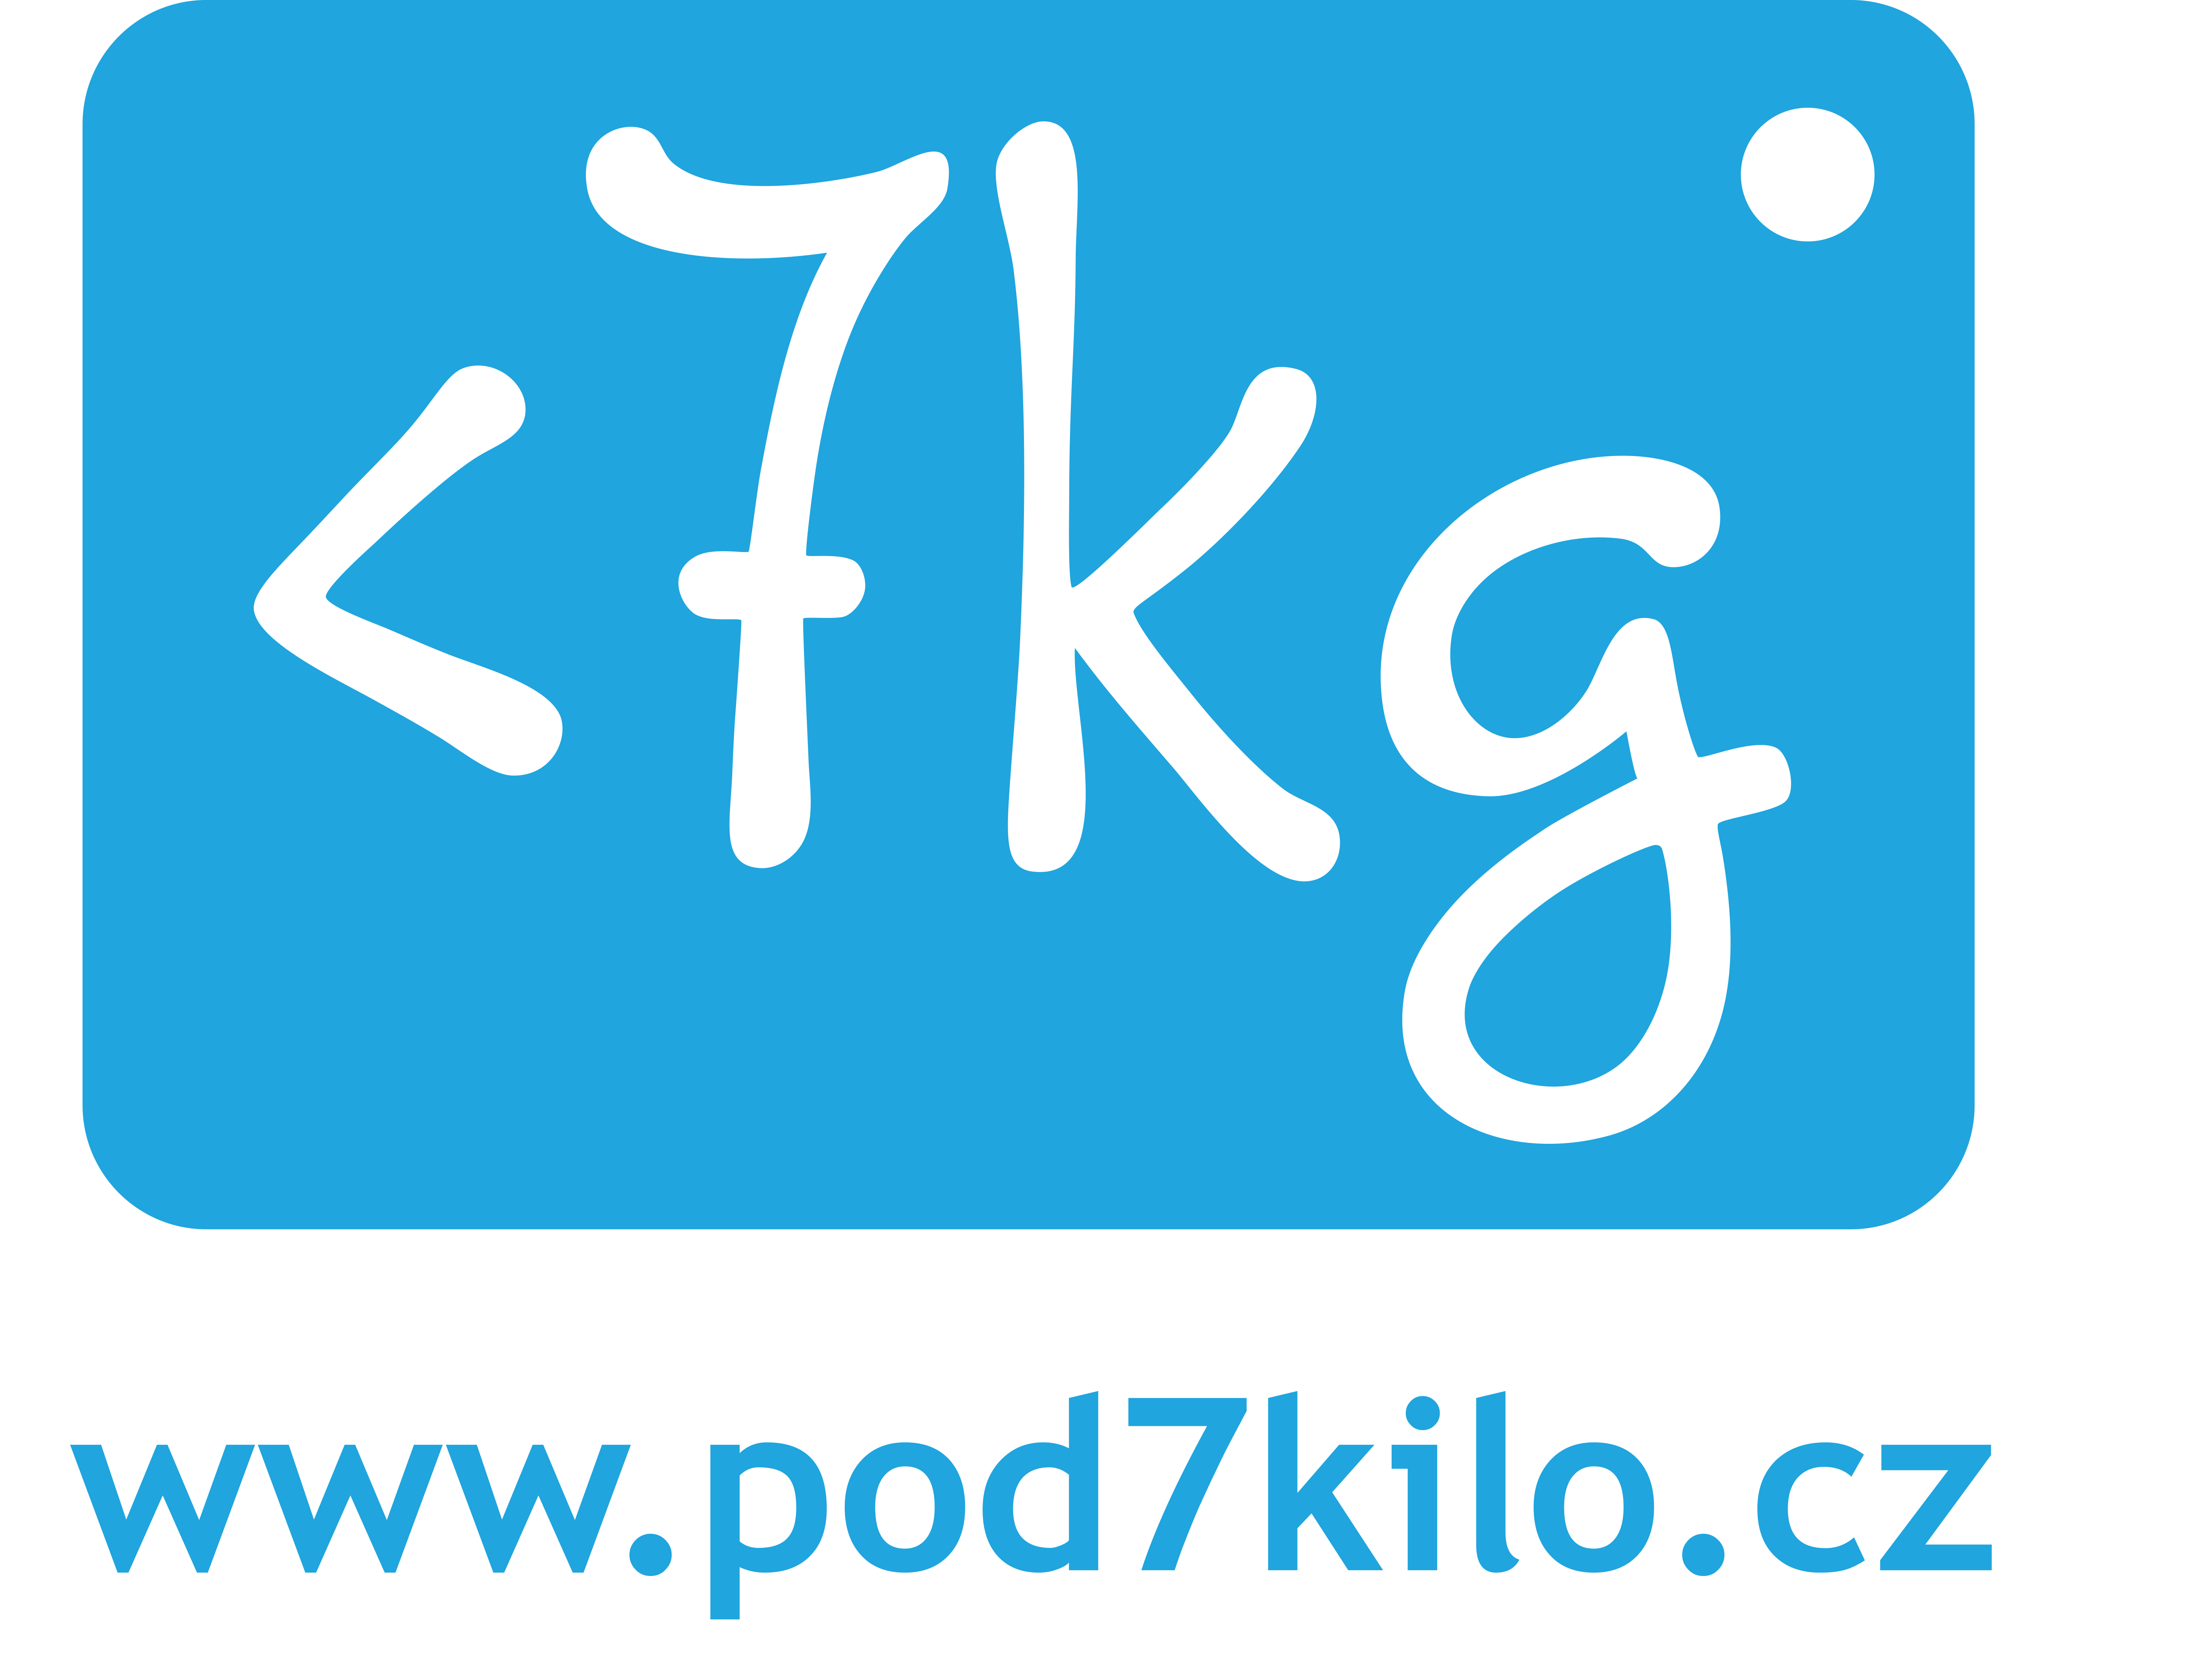 Logo Pod 7 kilo